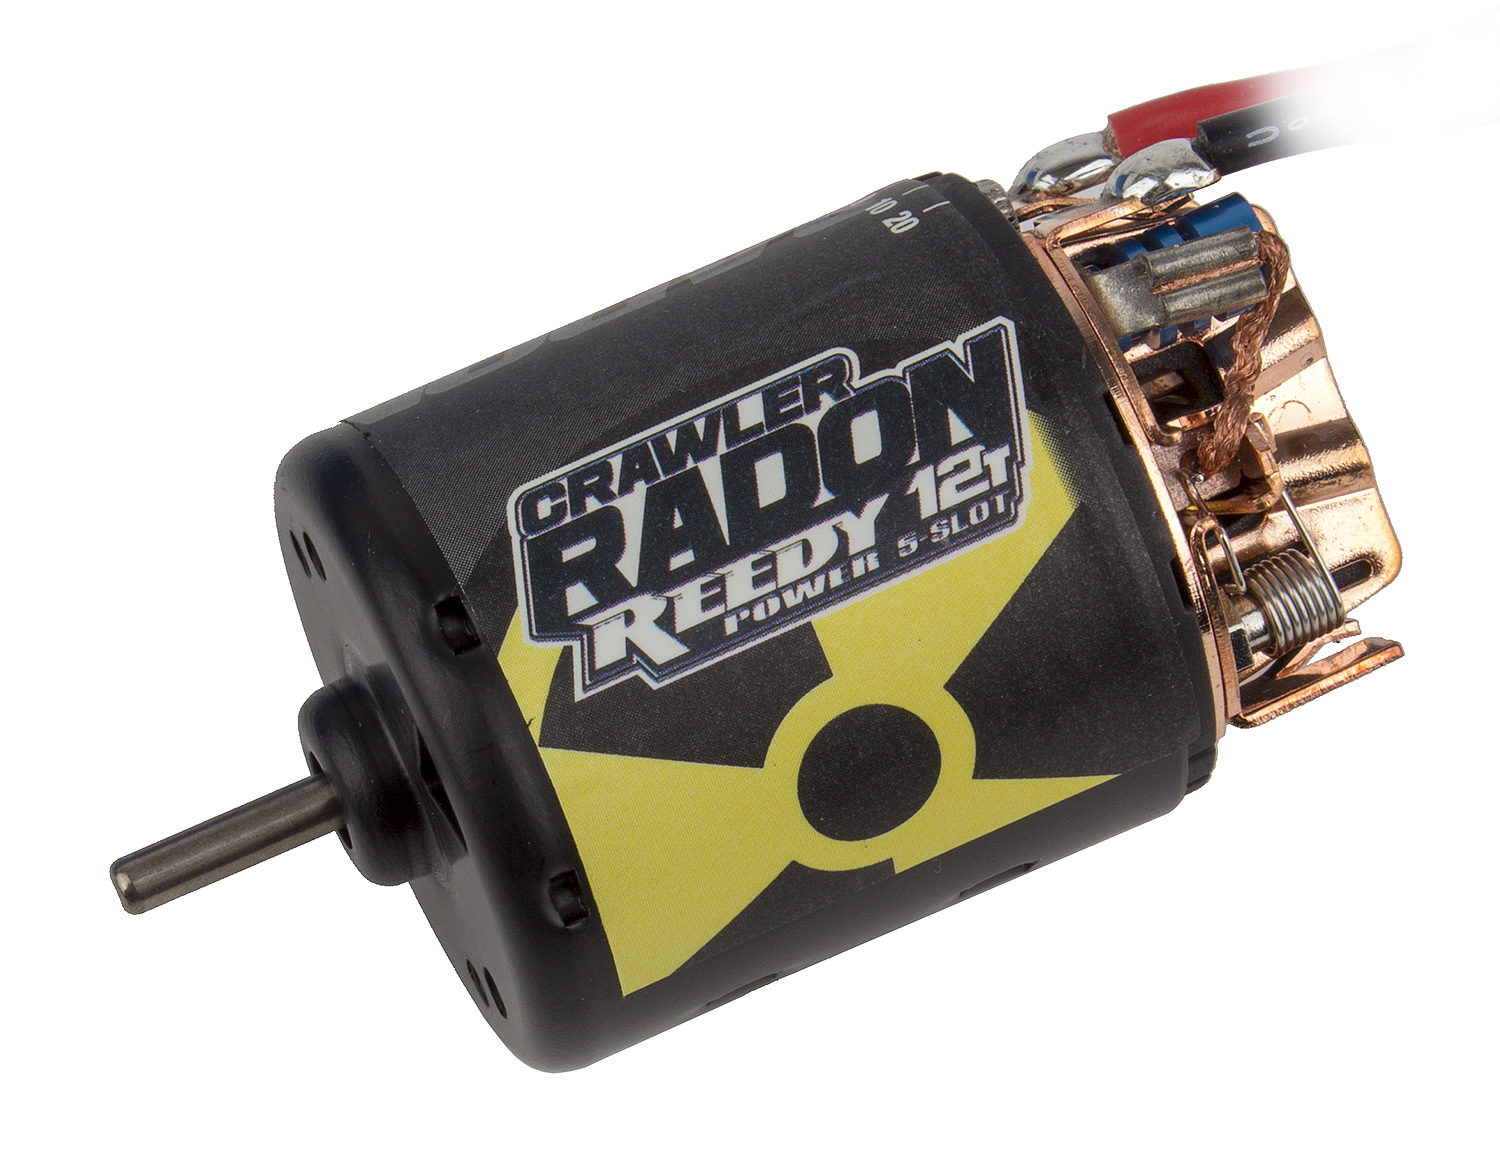 ASC27431 12T Details about   Reedy Radon 2 Crawler 5-Slot Brushed Motor 